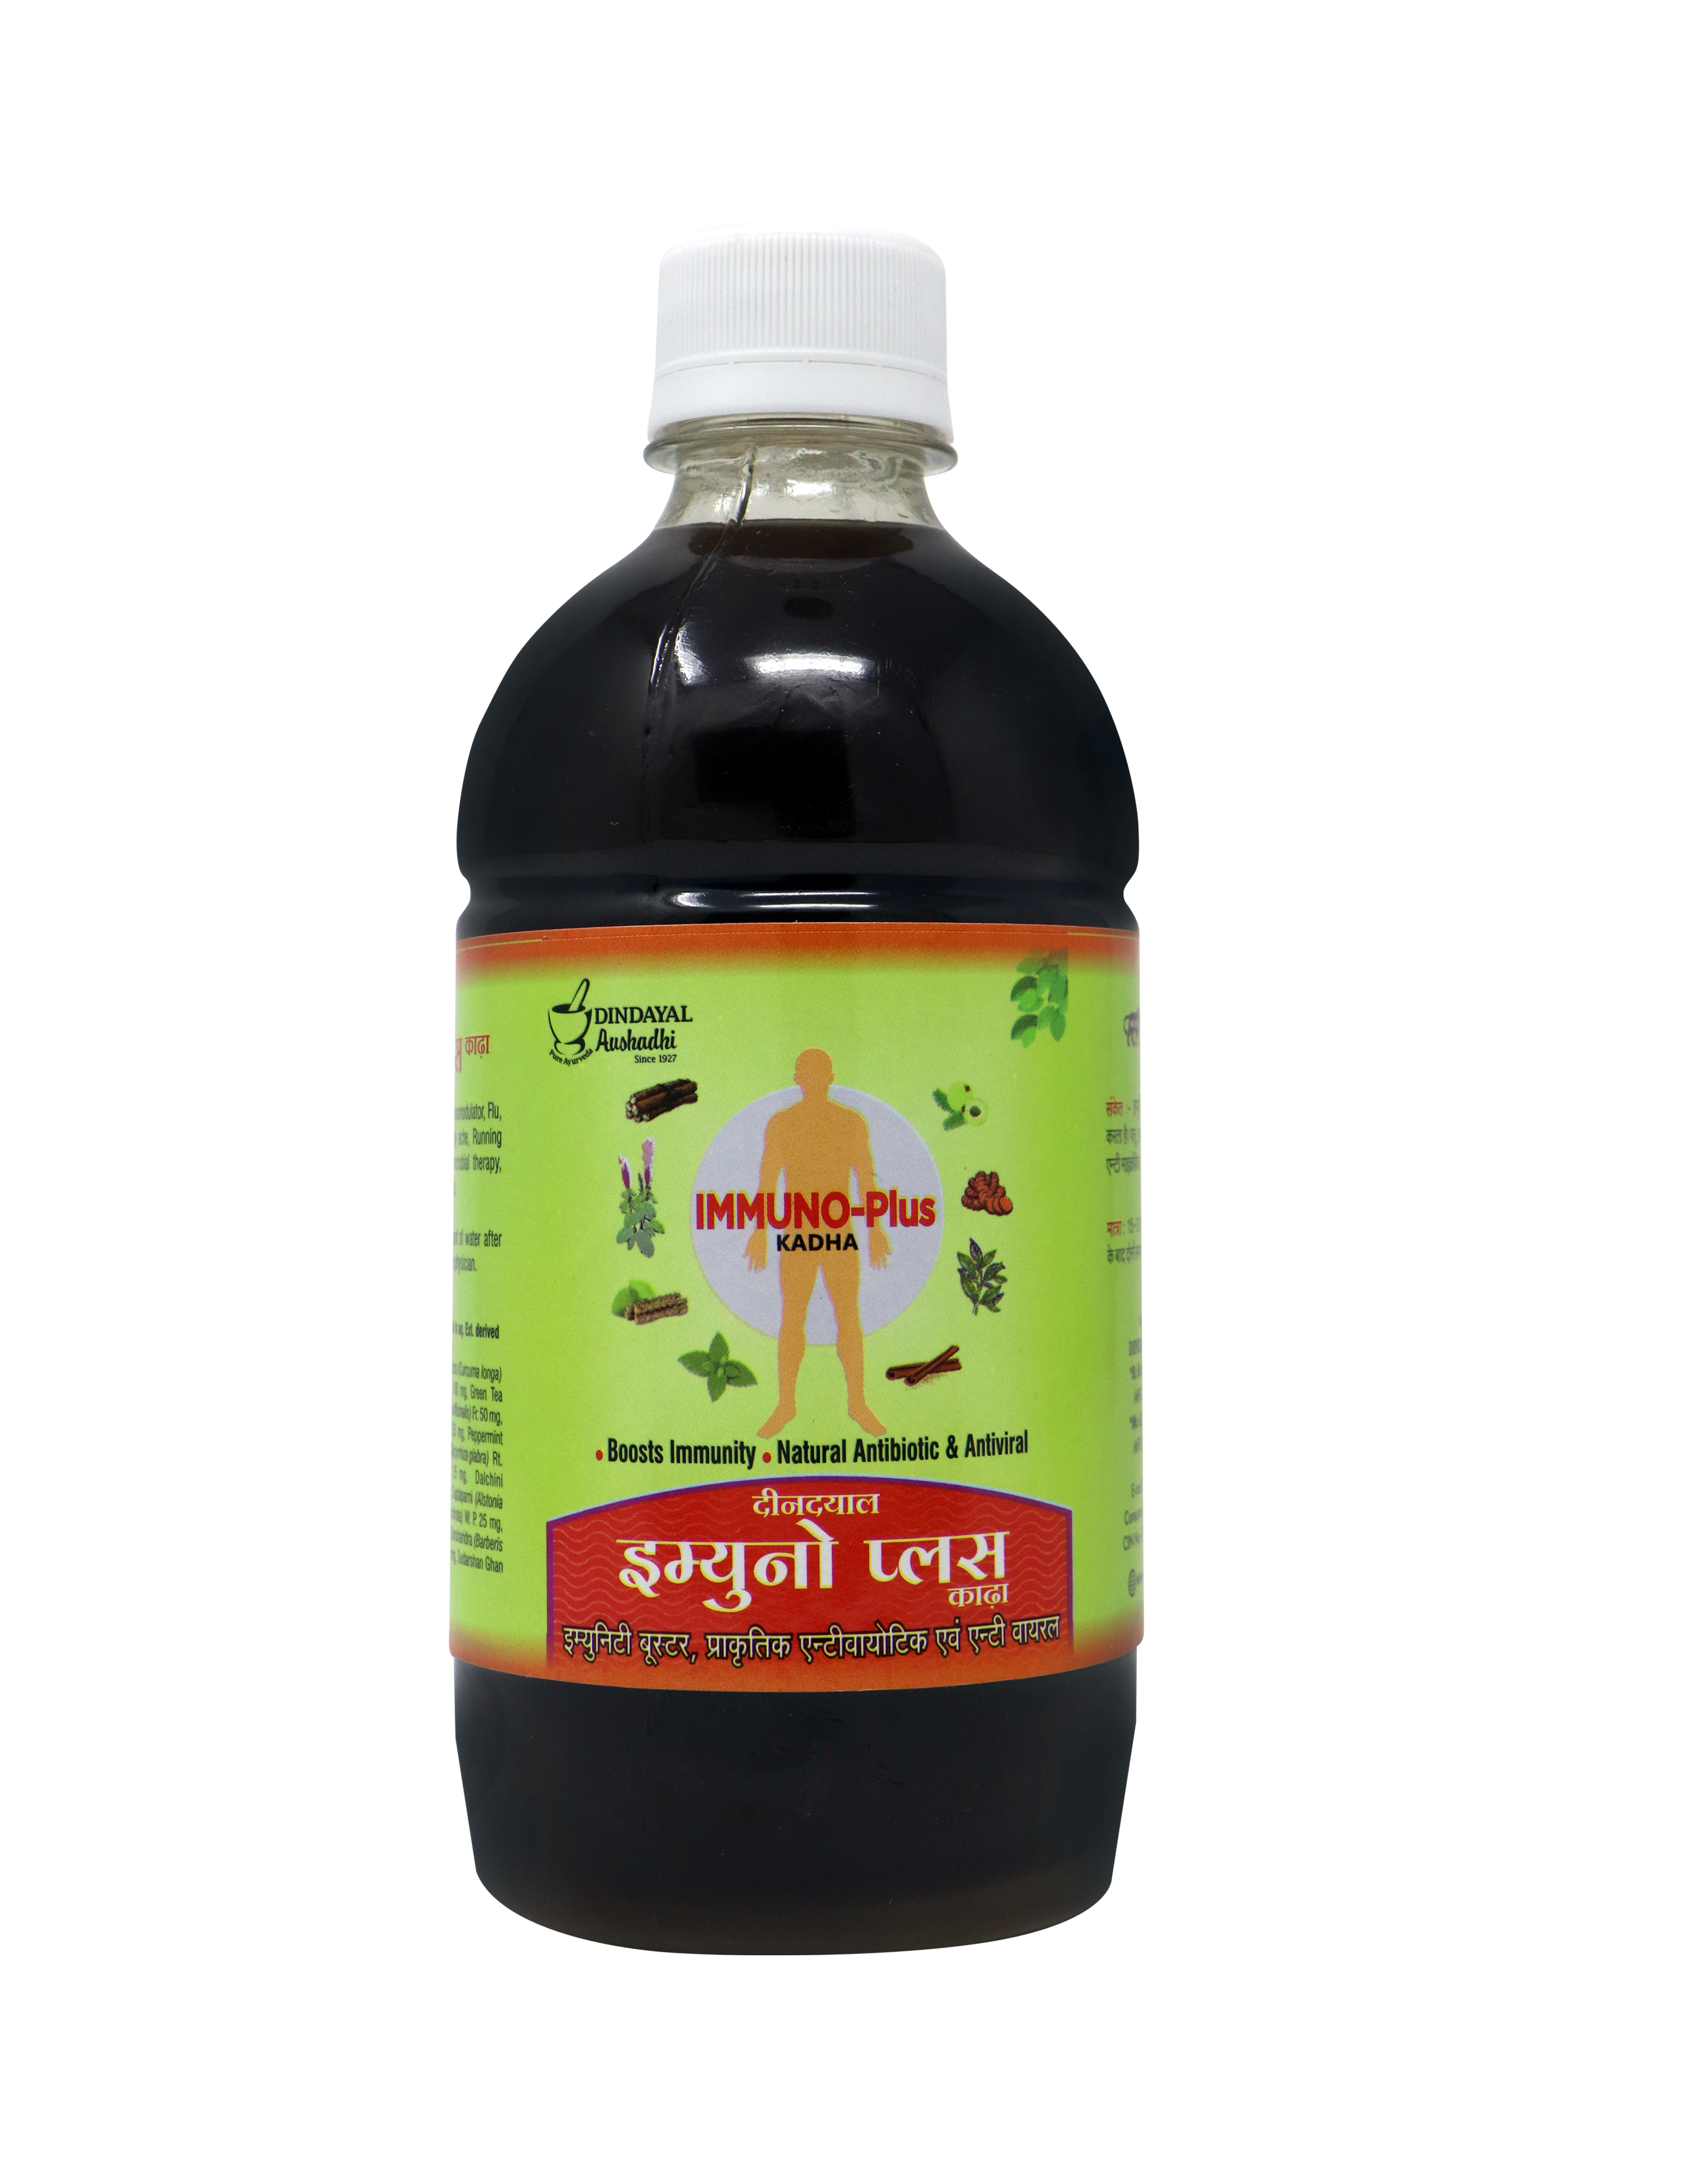 Buy Dindayal Aushadhi Immuno Plus Kadha at Best Price Online